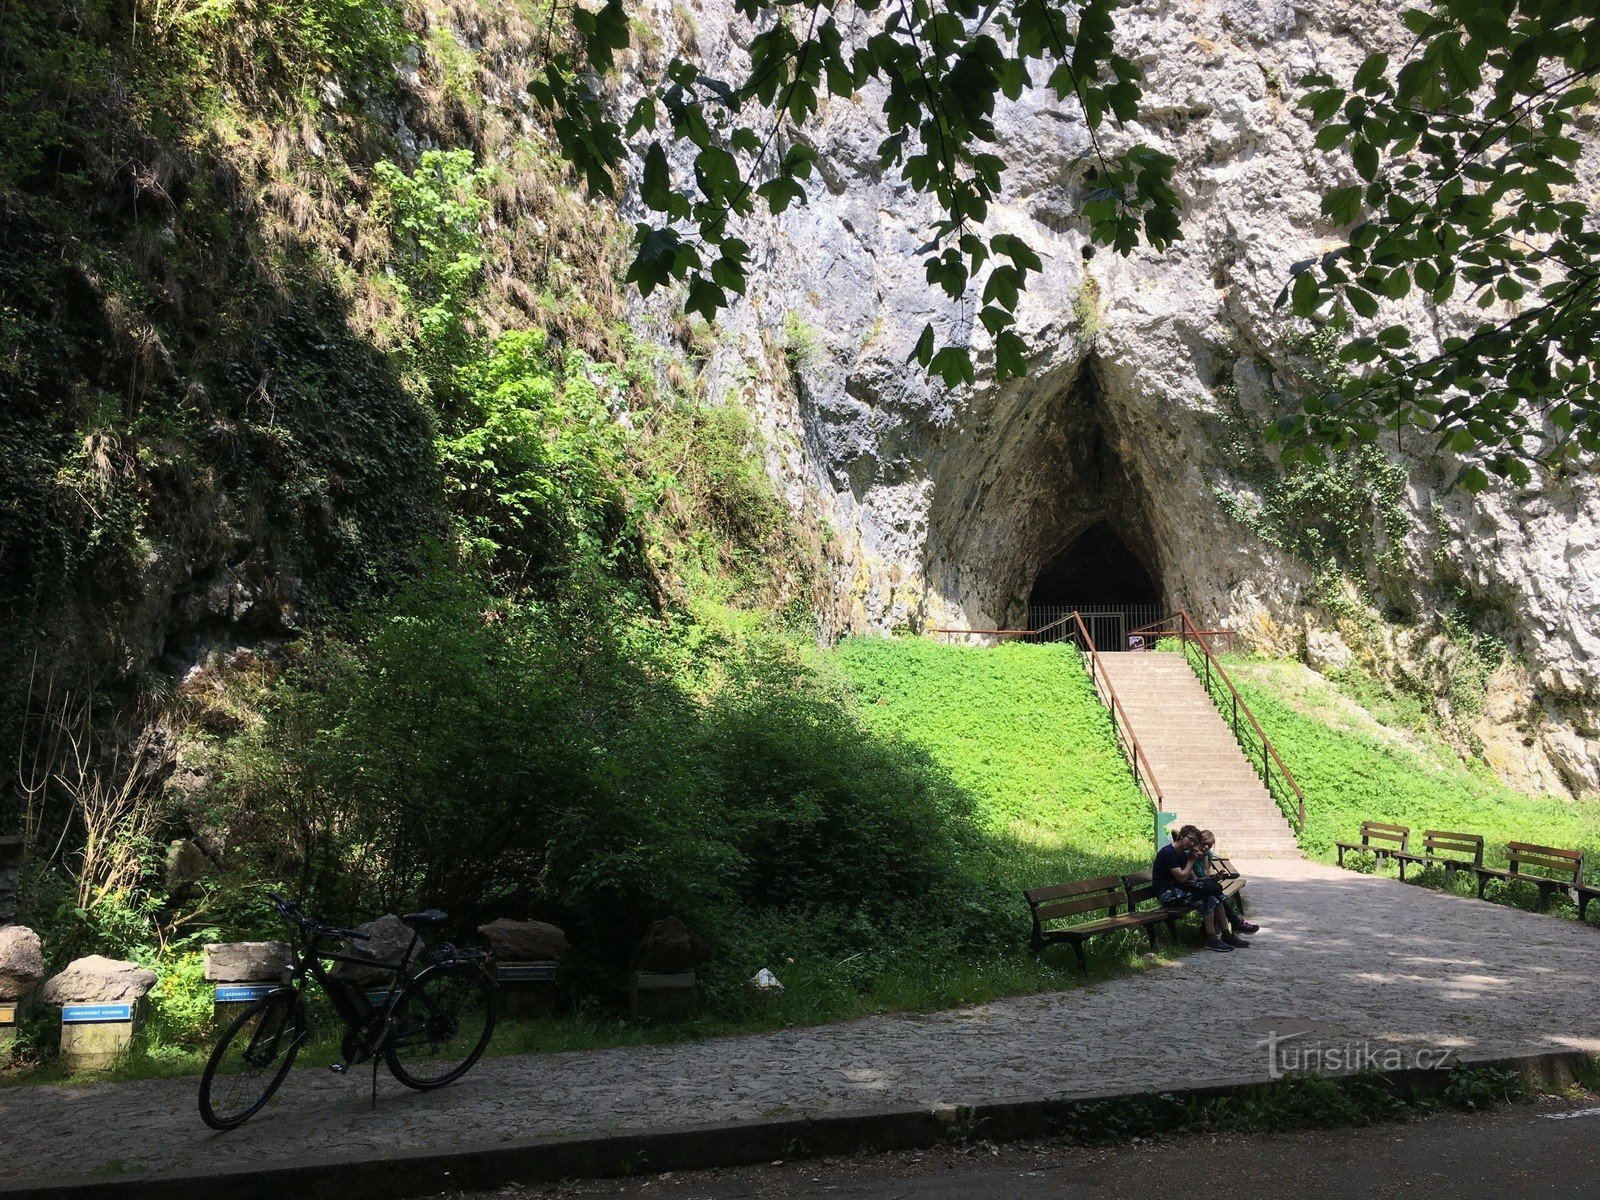 Печера Катерини